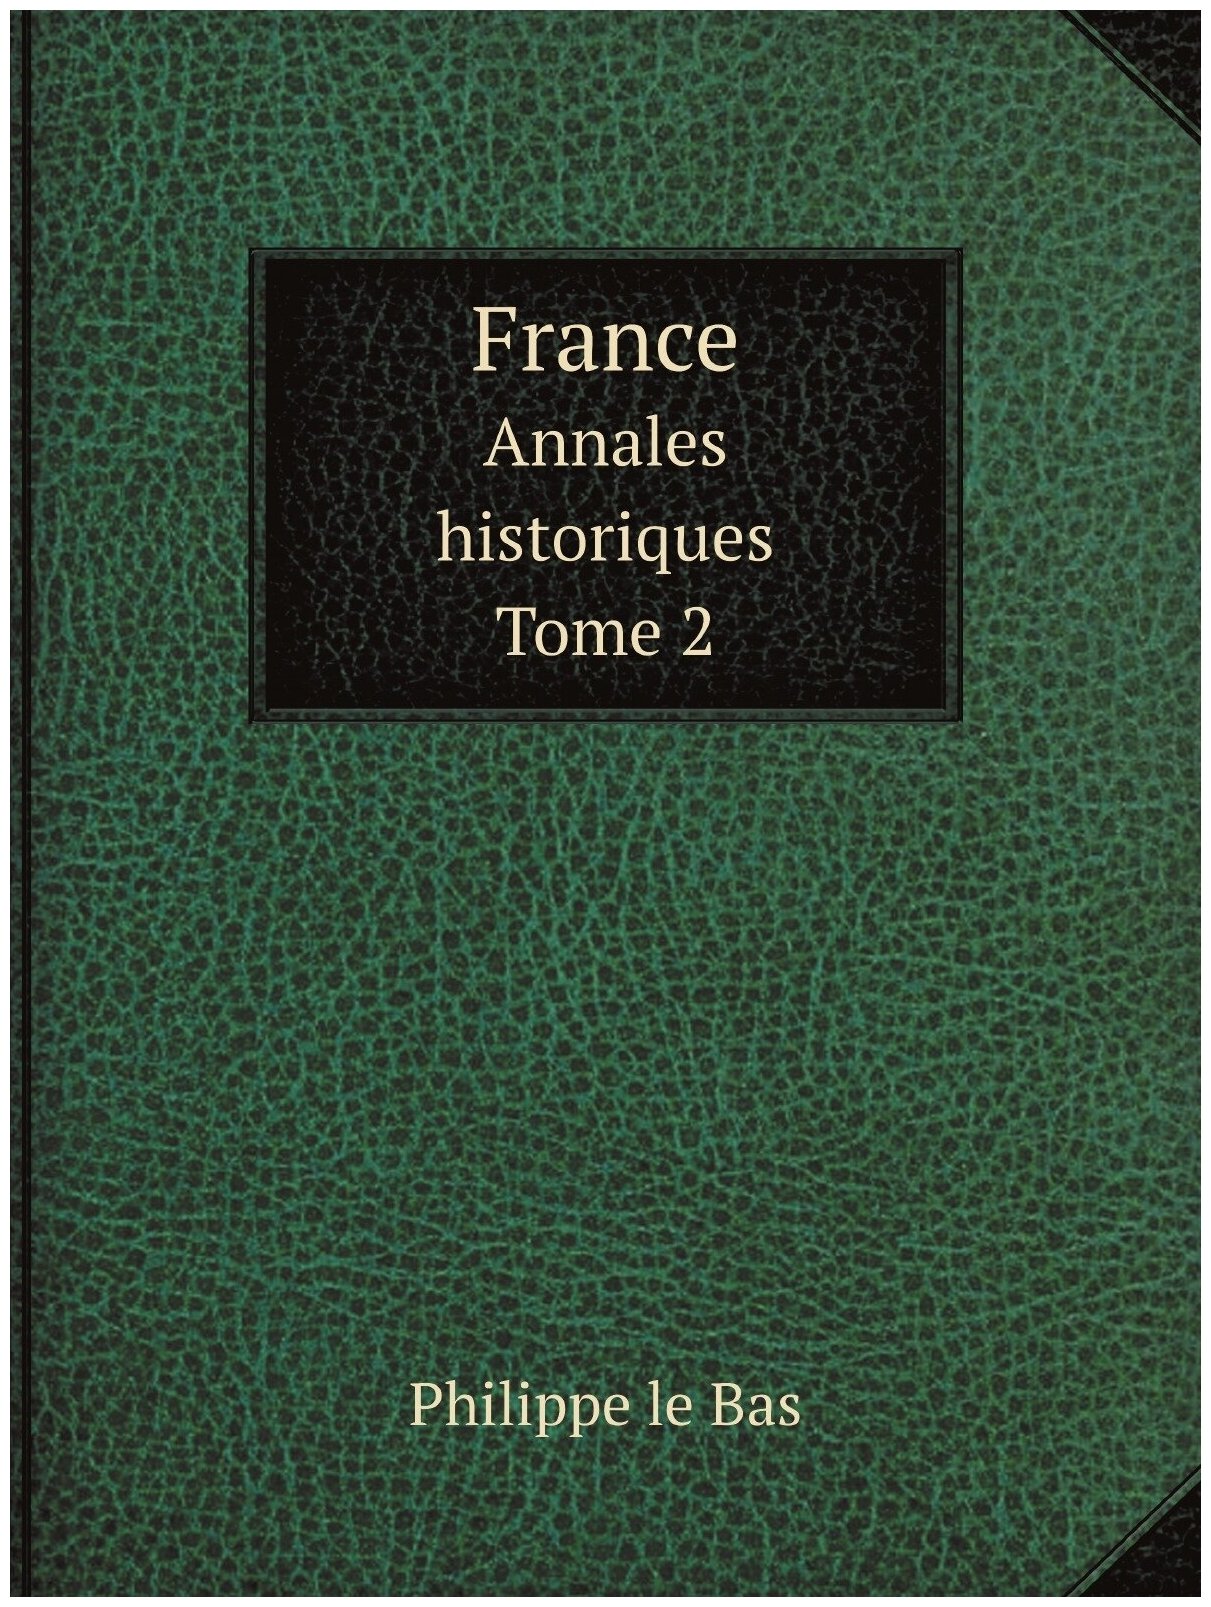 France. Annales historiques. Tome 2